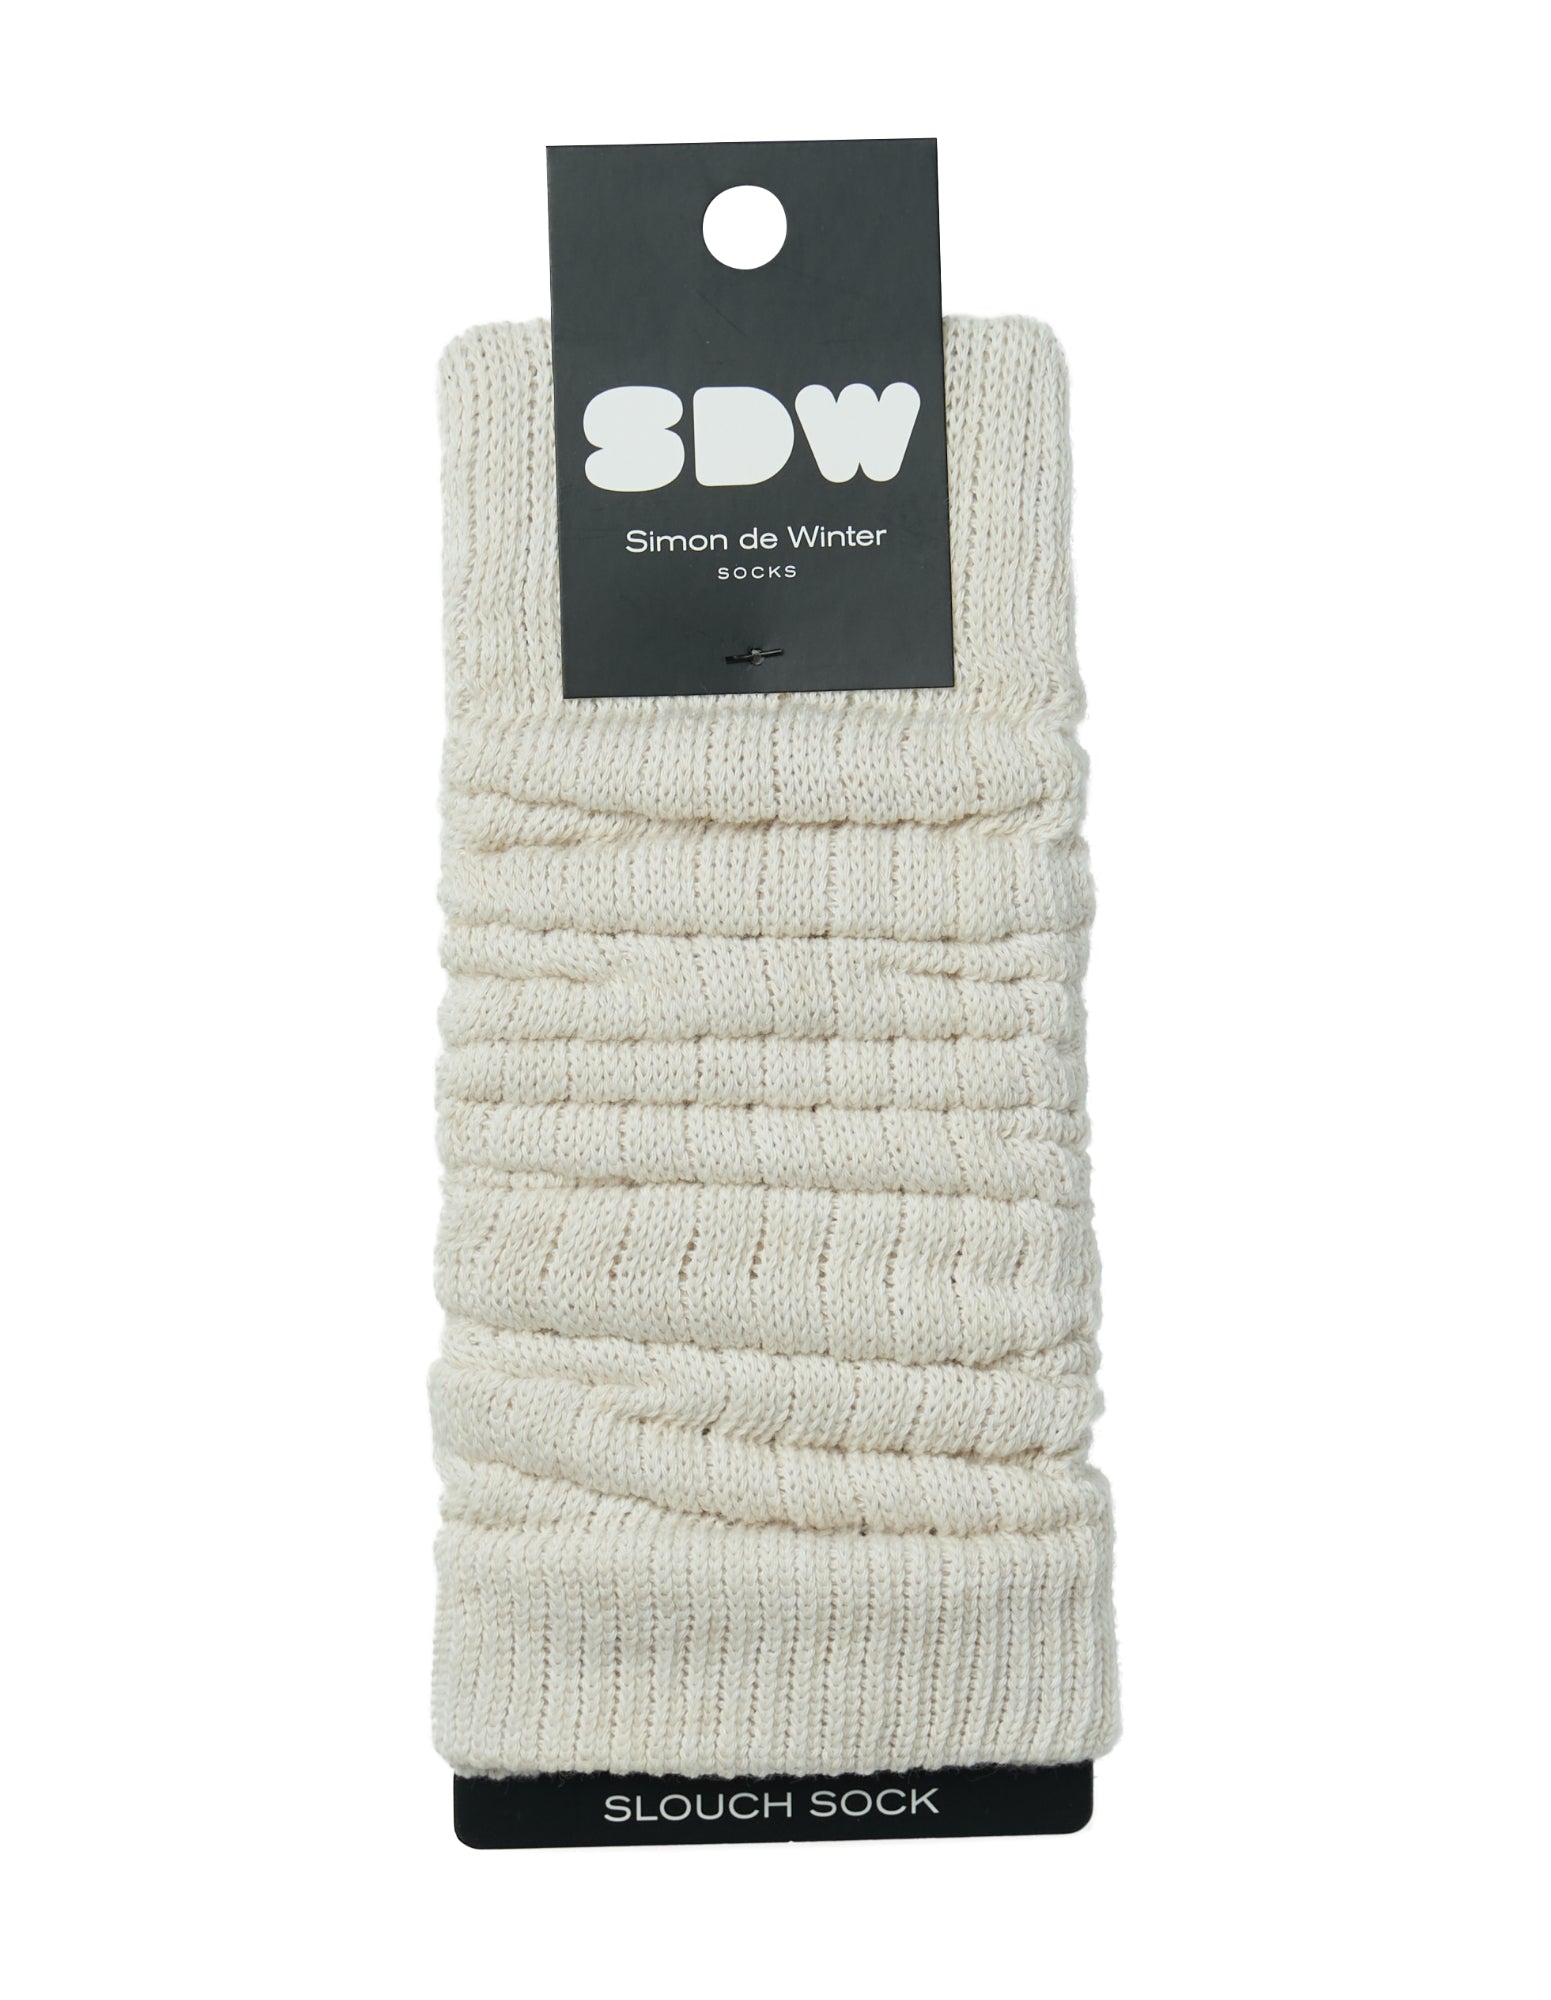 Simon de Winter Women's Slouch Socks in Ivory Marle